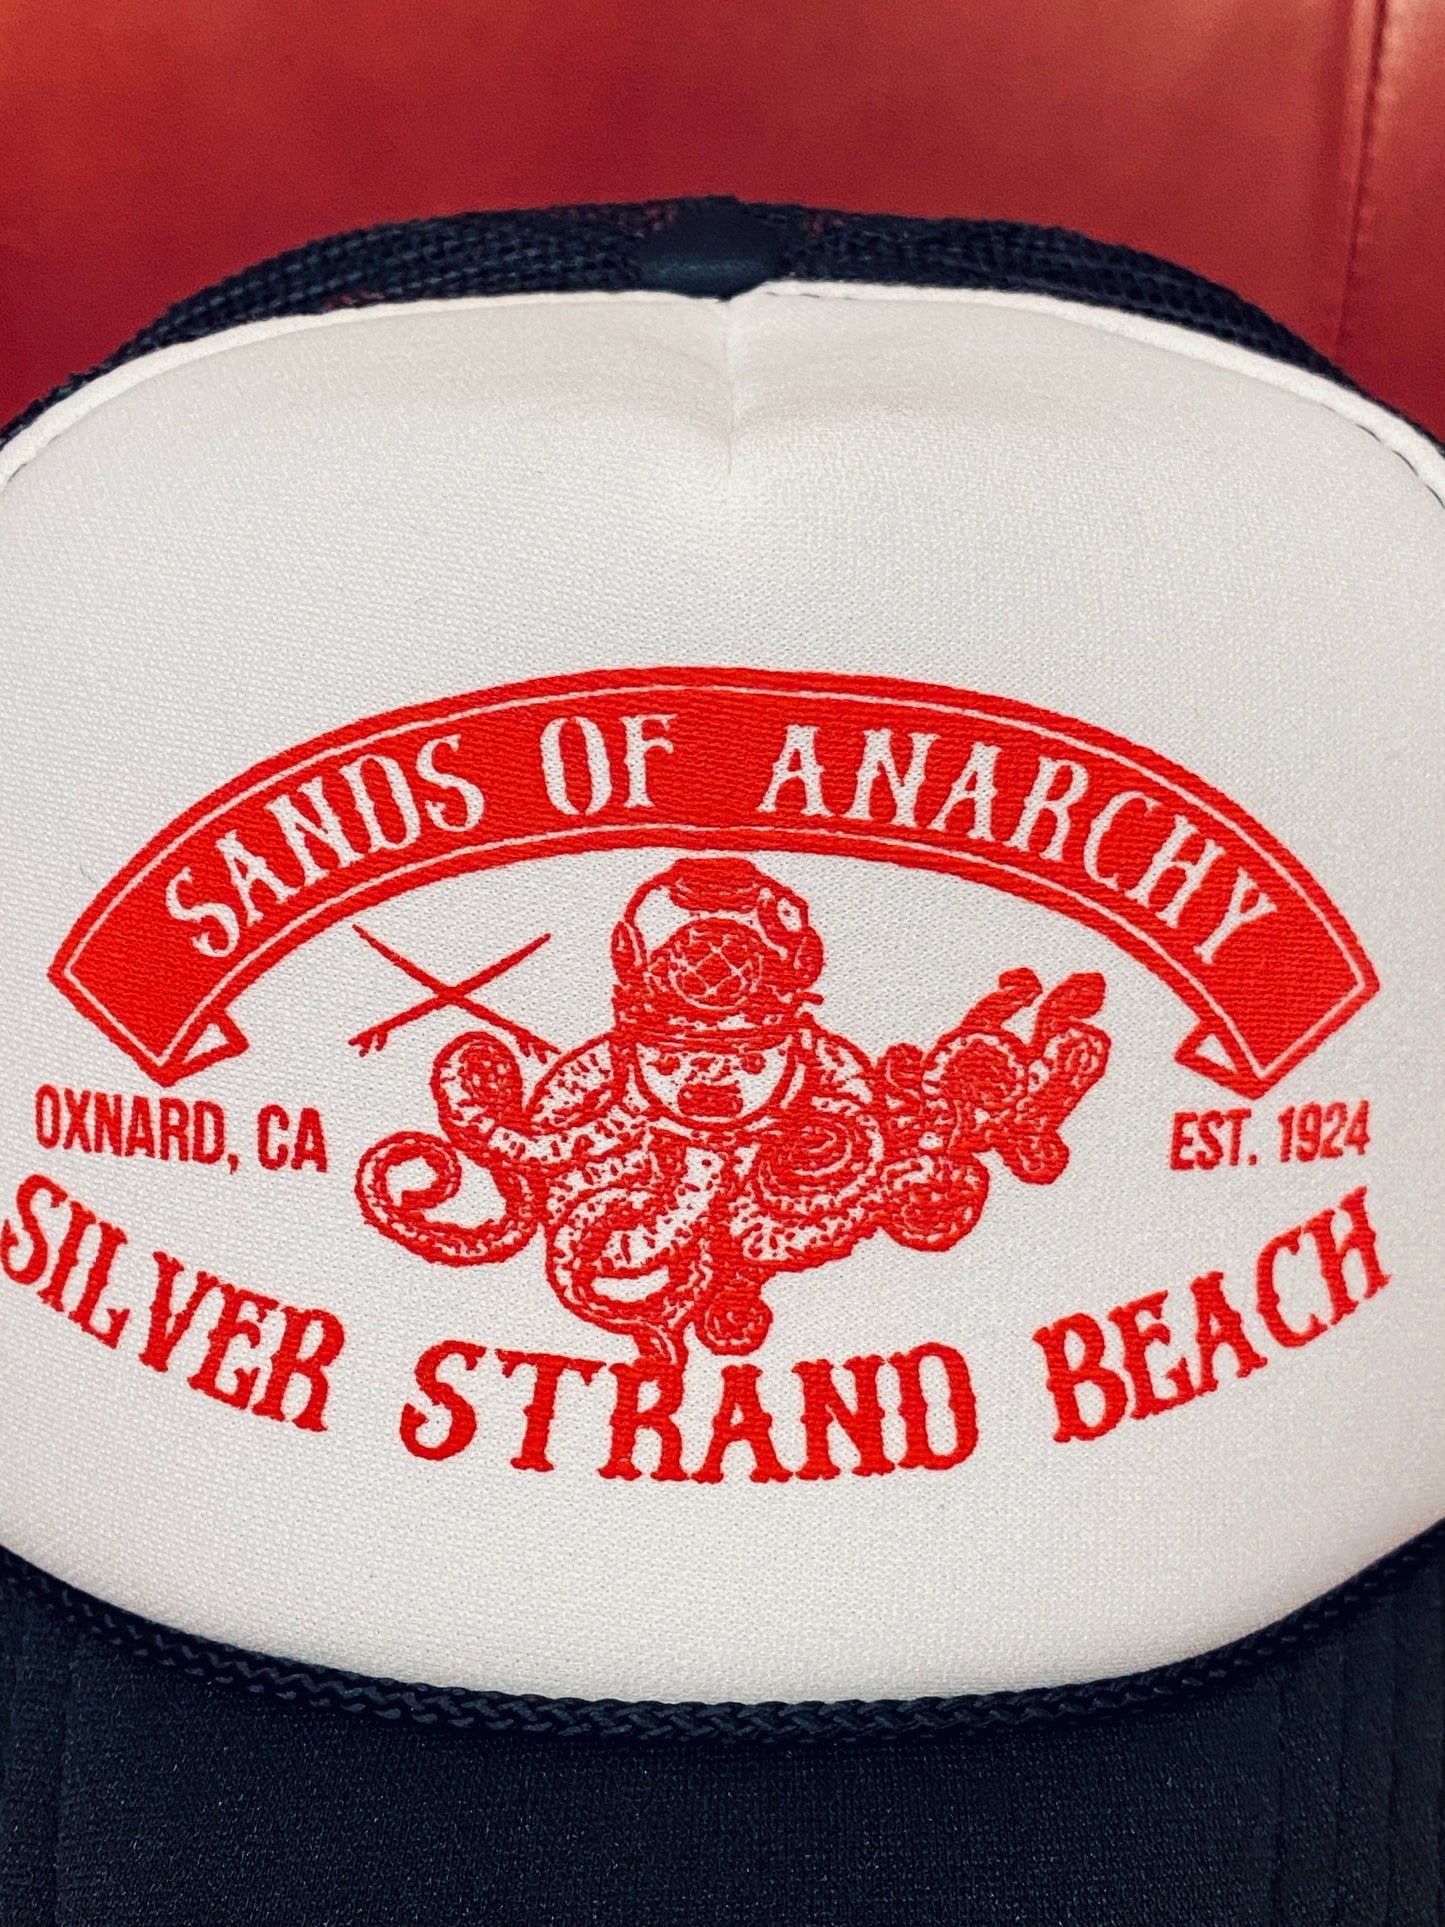 Silver Strand Beach Trucker Hat